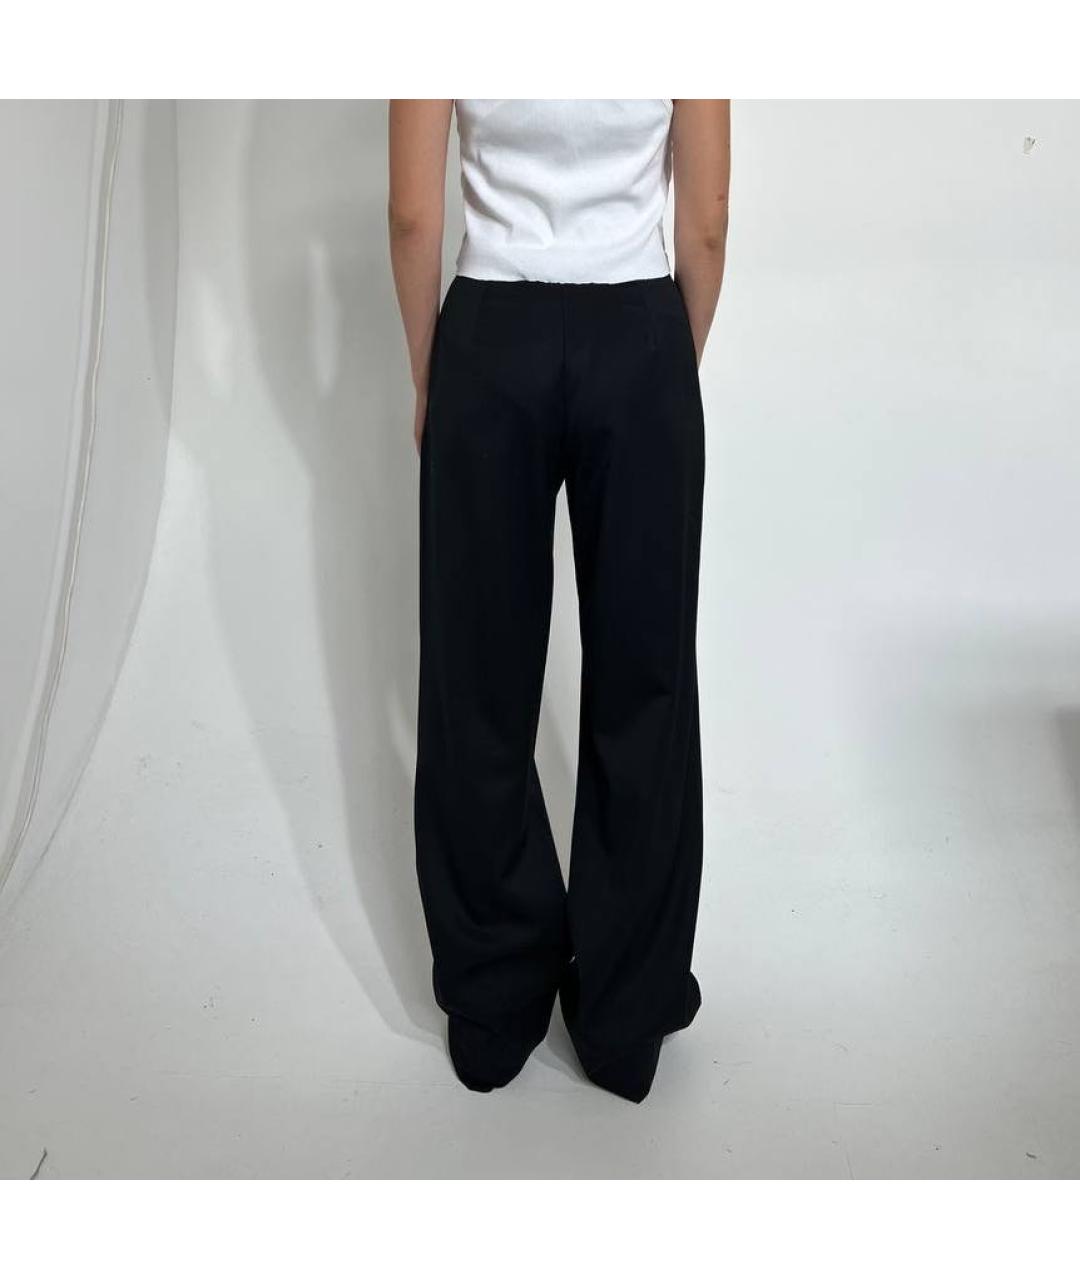 J.KIM Черные вискозные брюки широкие, фото 2